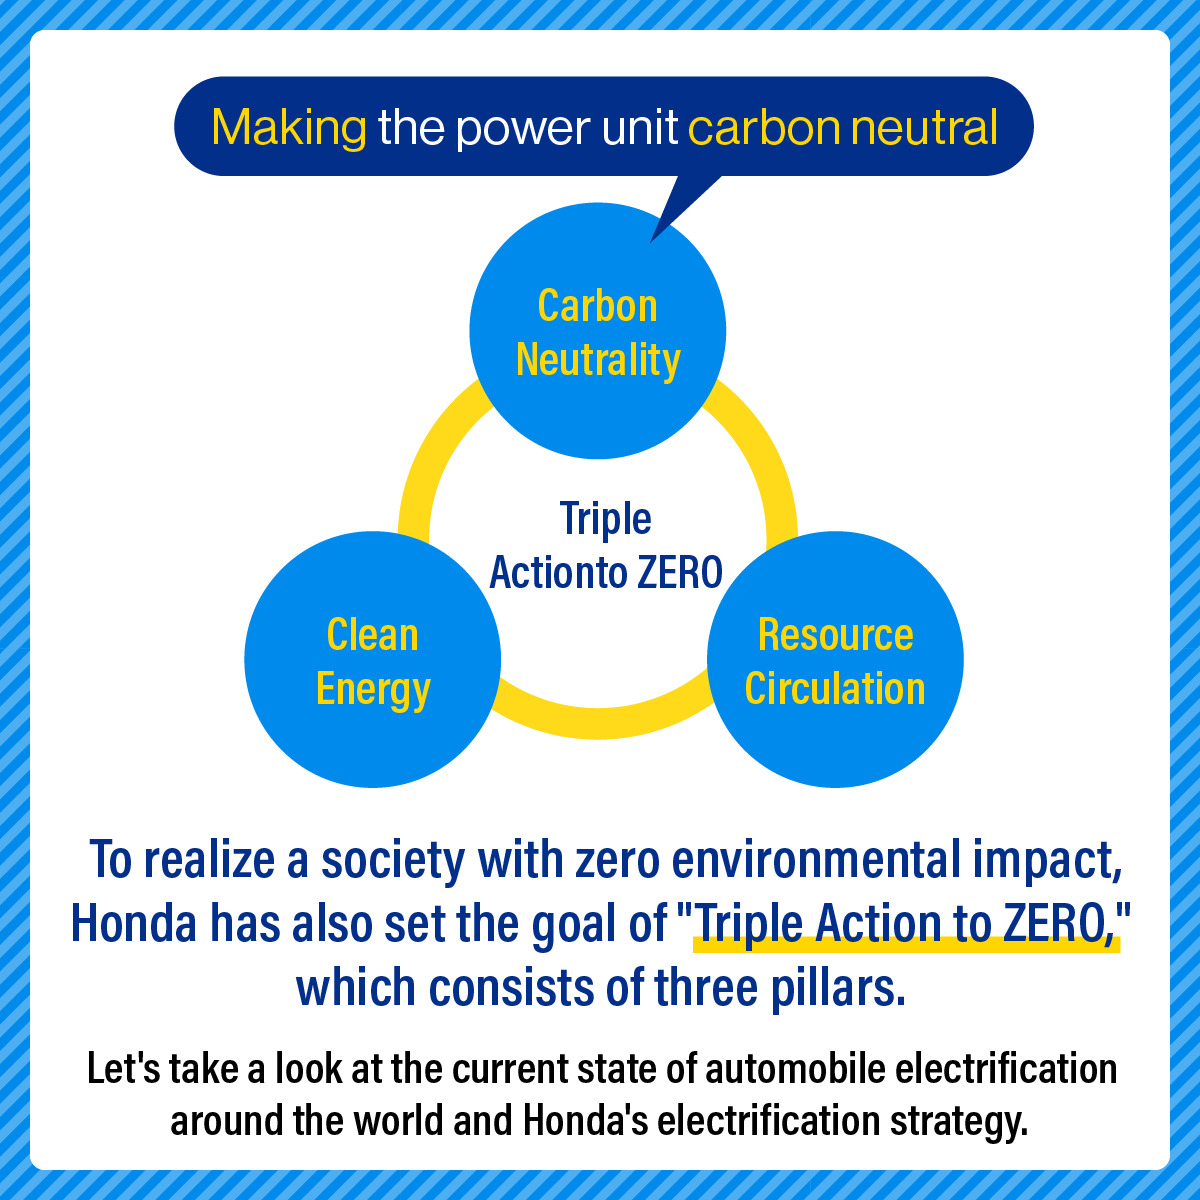 Honda has also set the goal of "Triple Action to ZERO," to realize a society with zero environmental impact